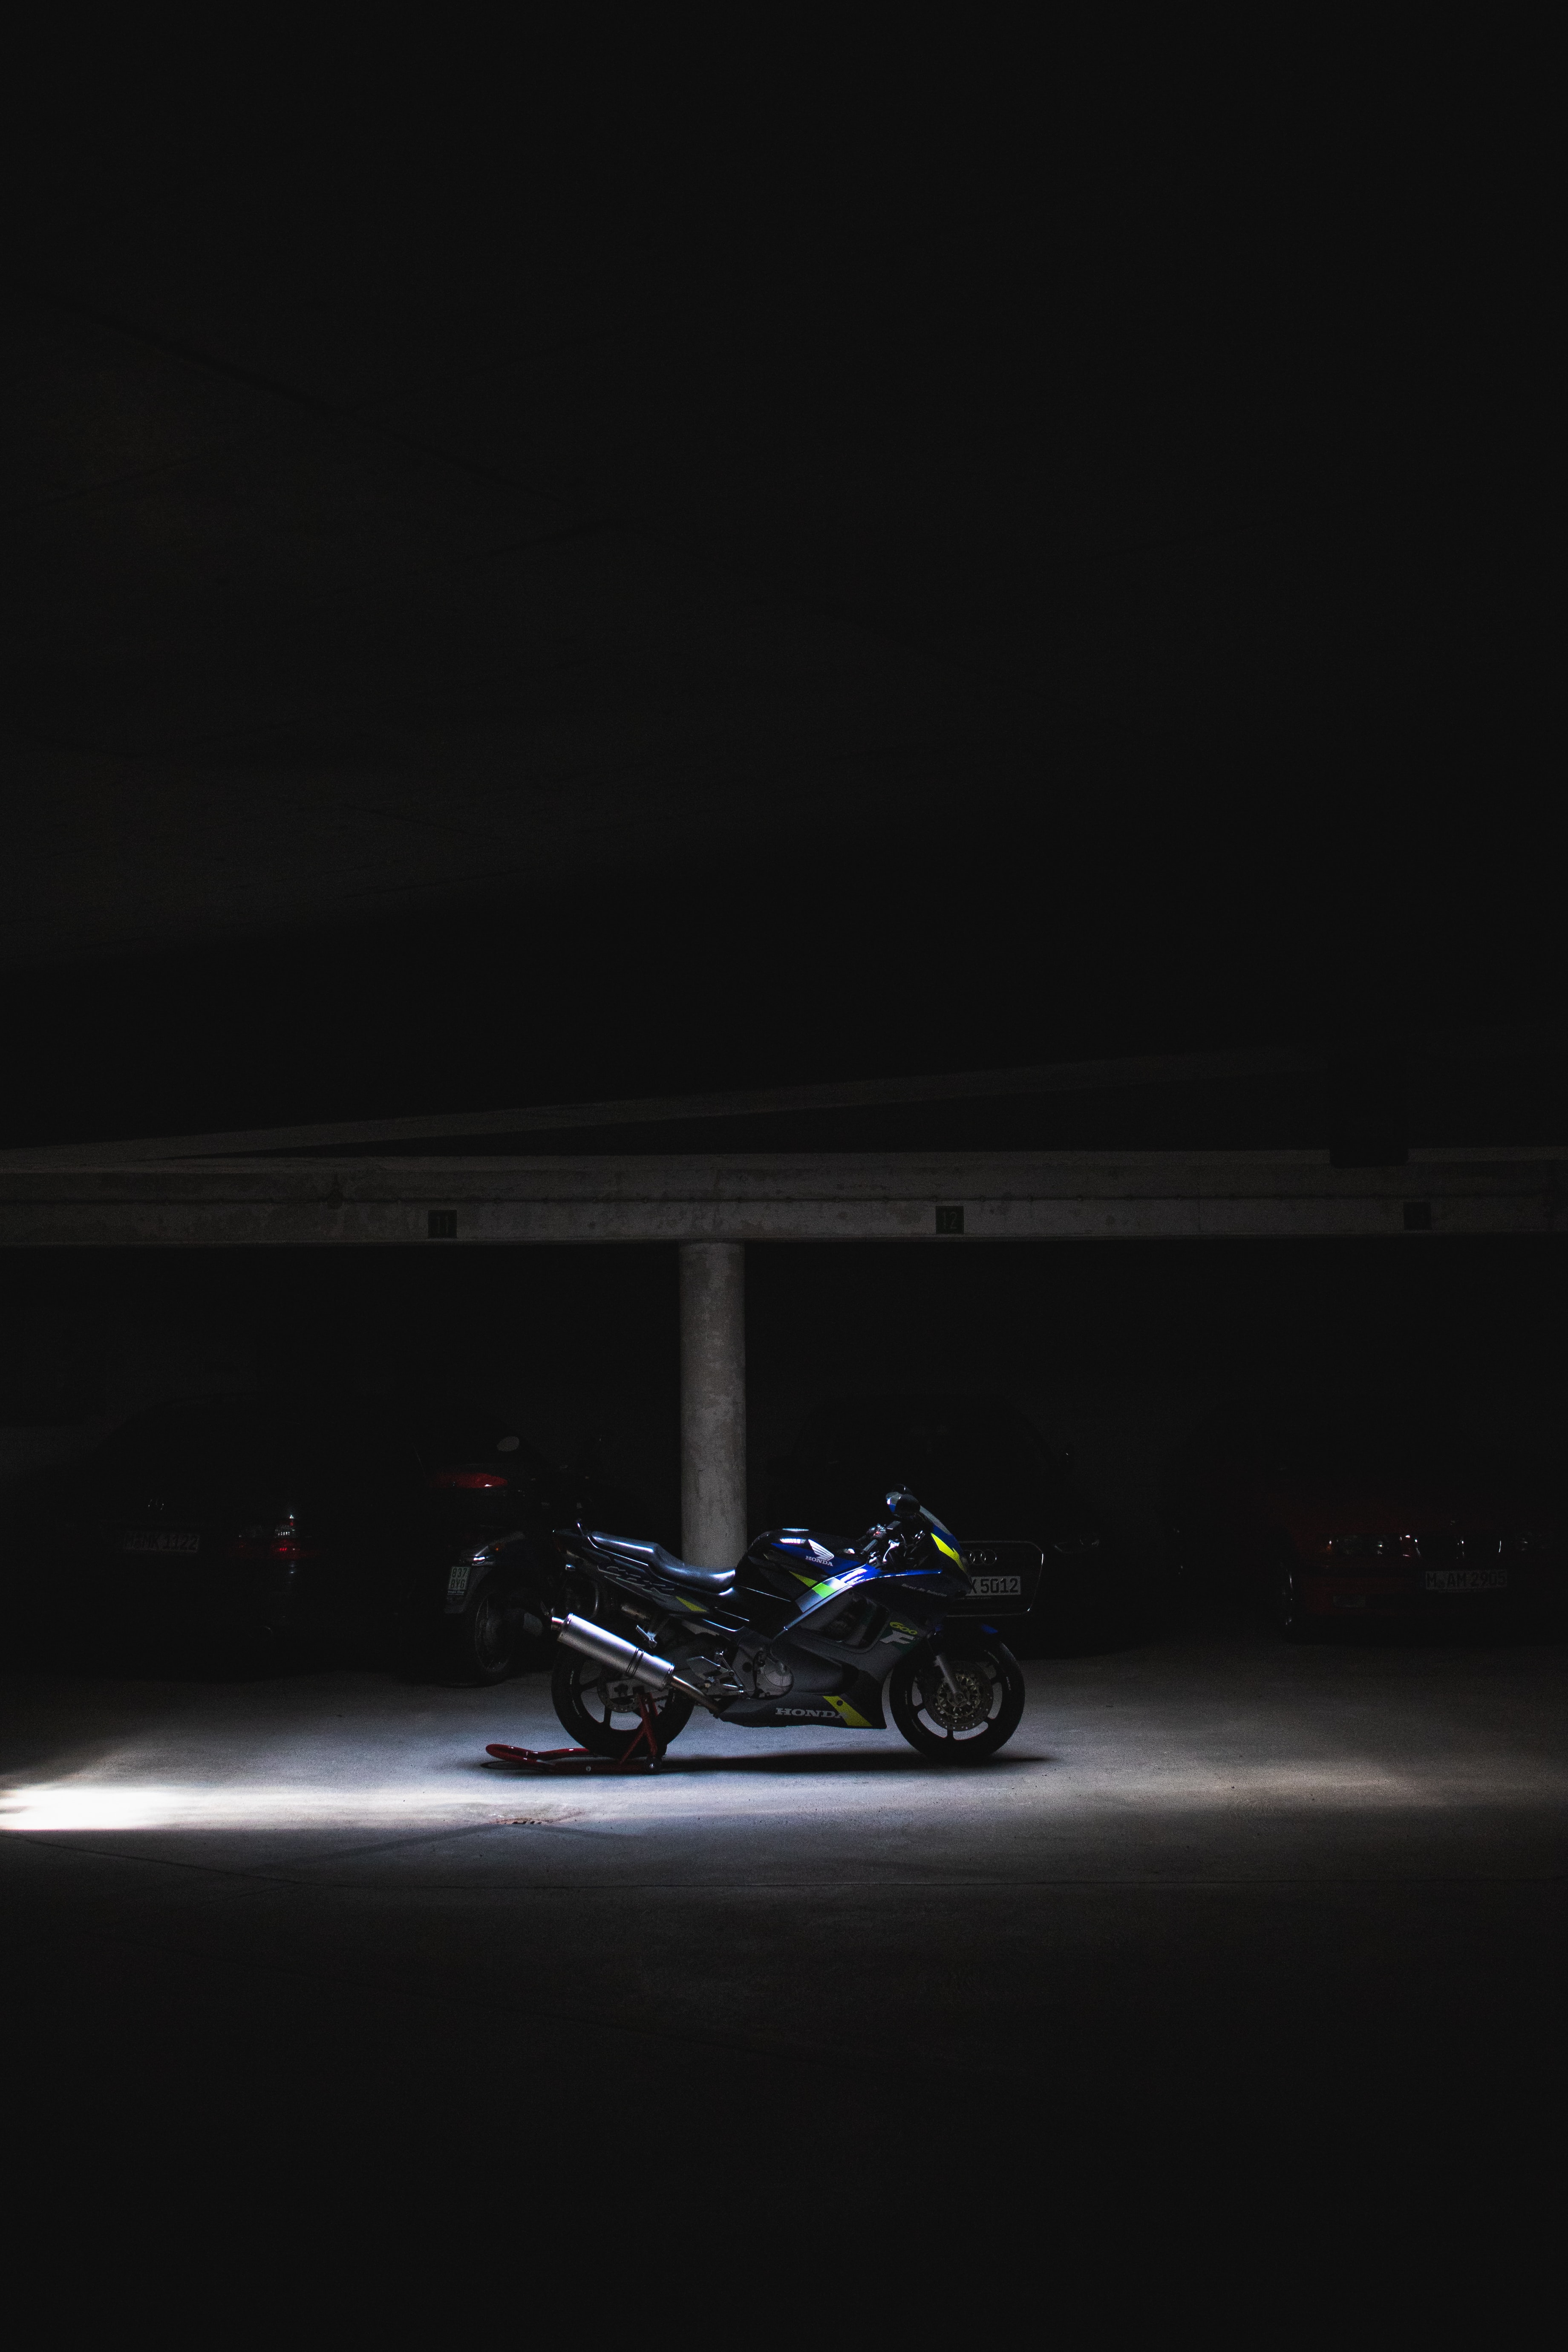 dark, motorcycles, motorcycle, wheels